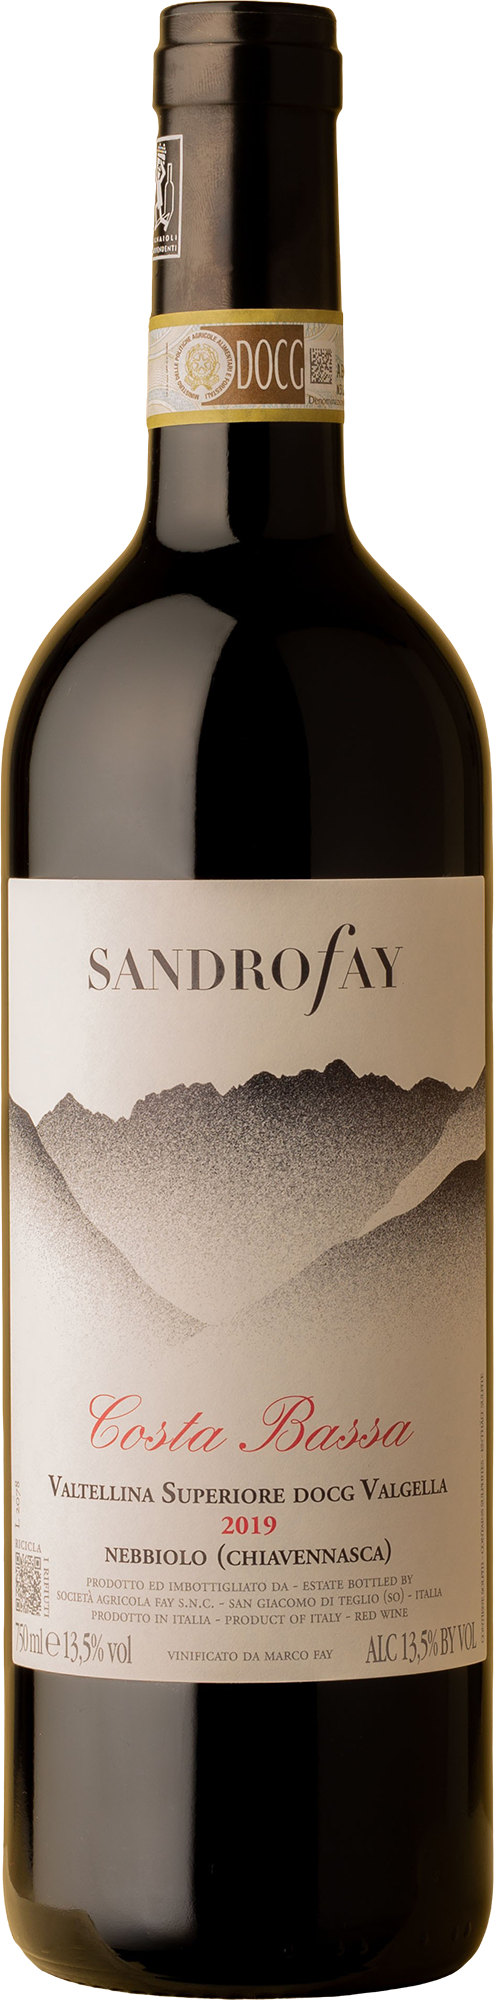 Sandro Fay - Costa Bassa Valtellina Superiore Nebbiolo 2019 Red Wine